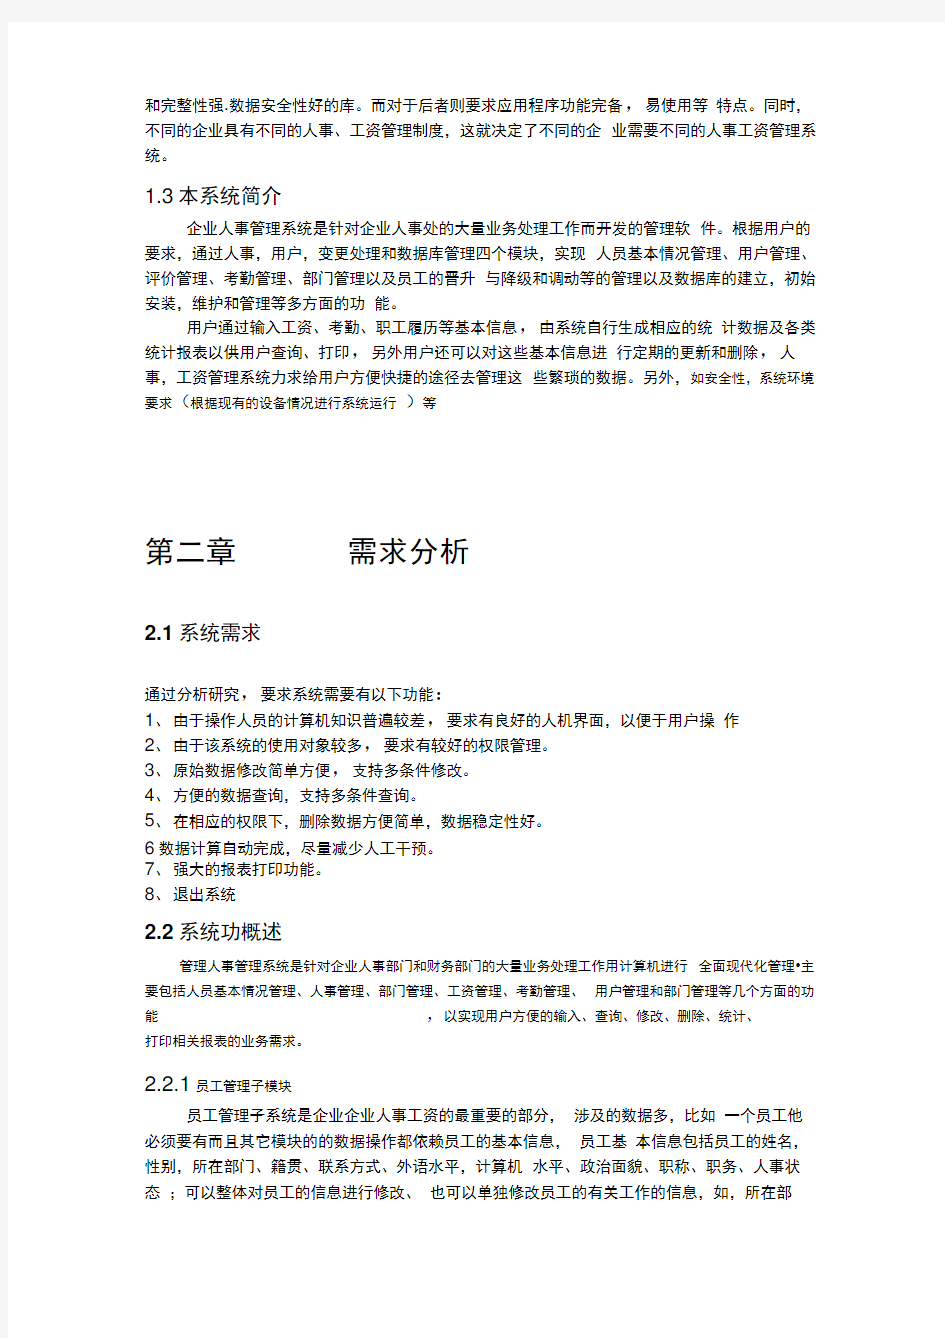 上海区块链公司人事管理系统(包括流程图)